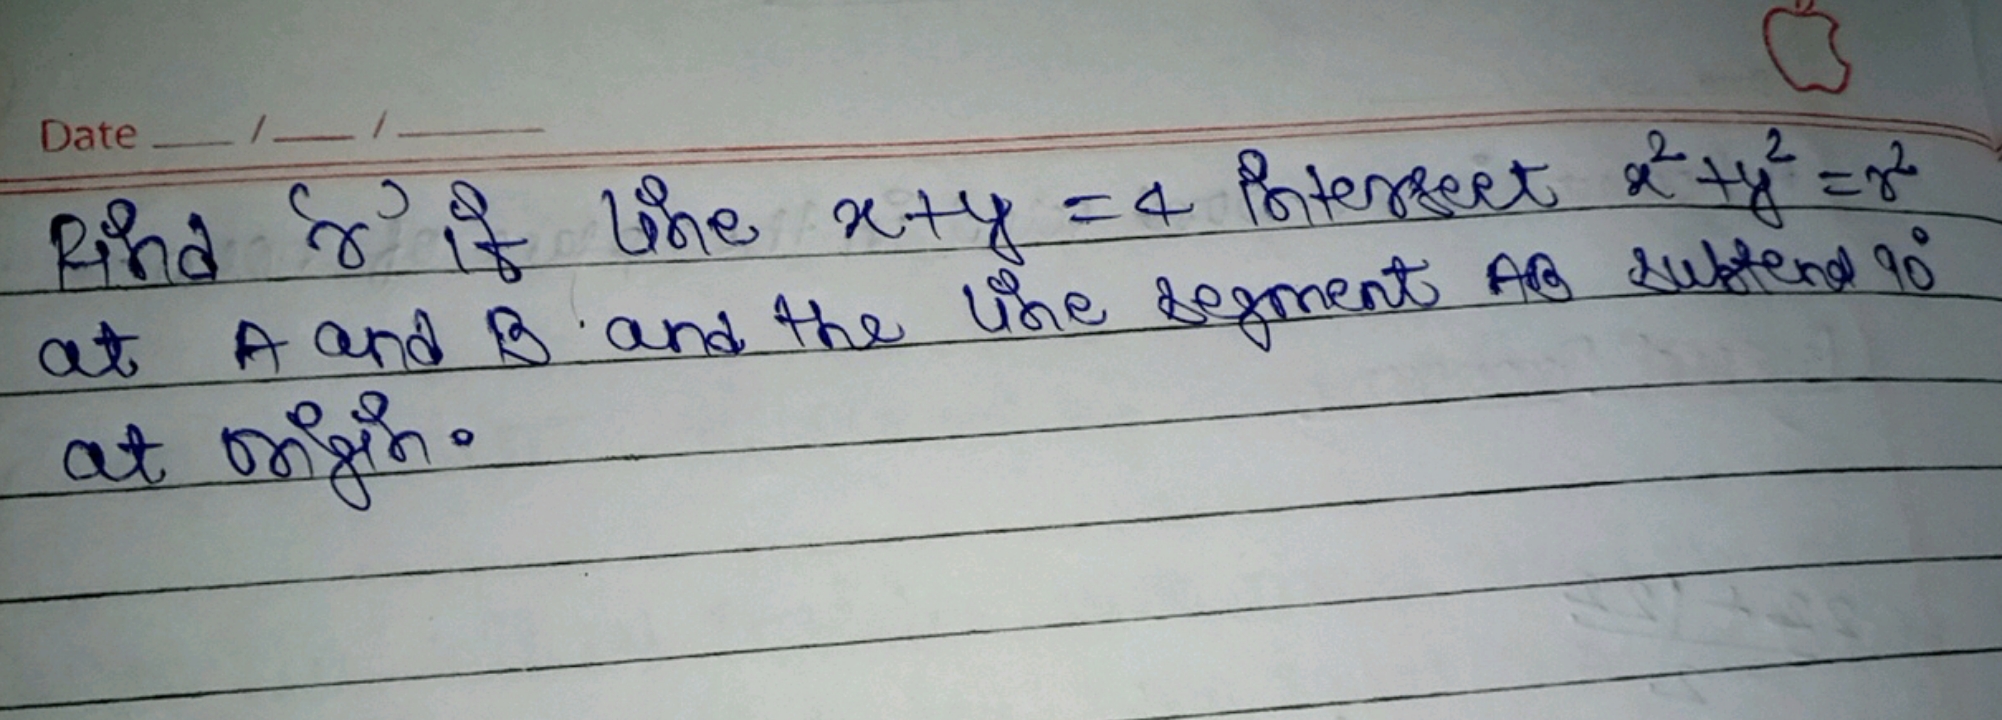 Find γ if line x+y=4 Piterrect x2+y2=r2 at A and B and the line segmen